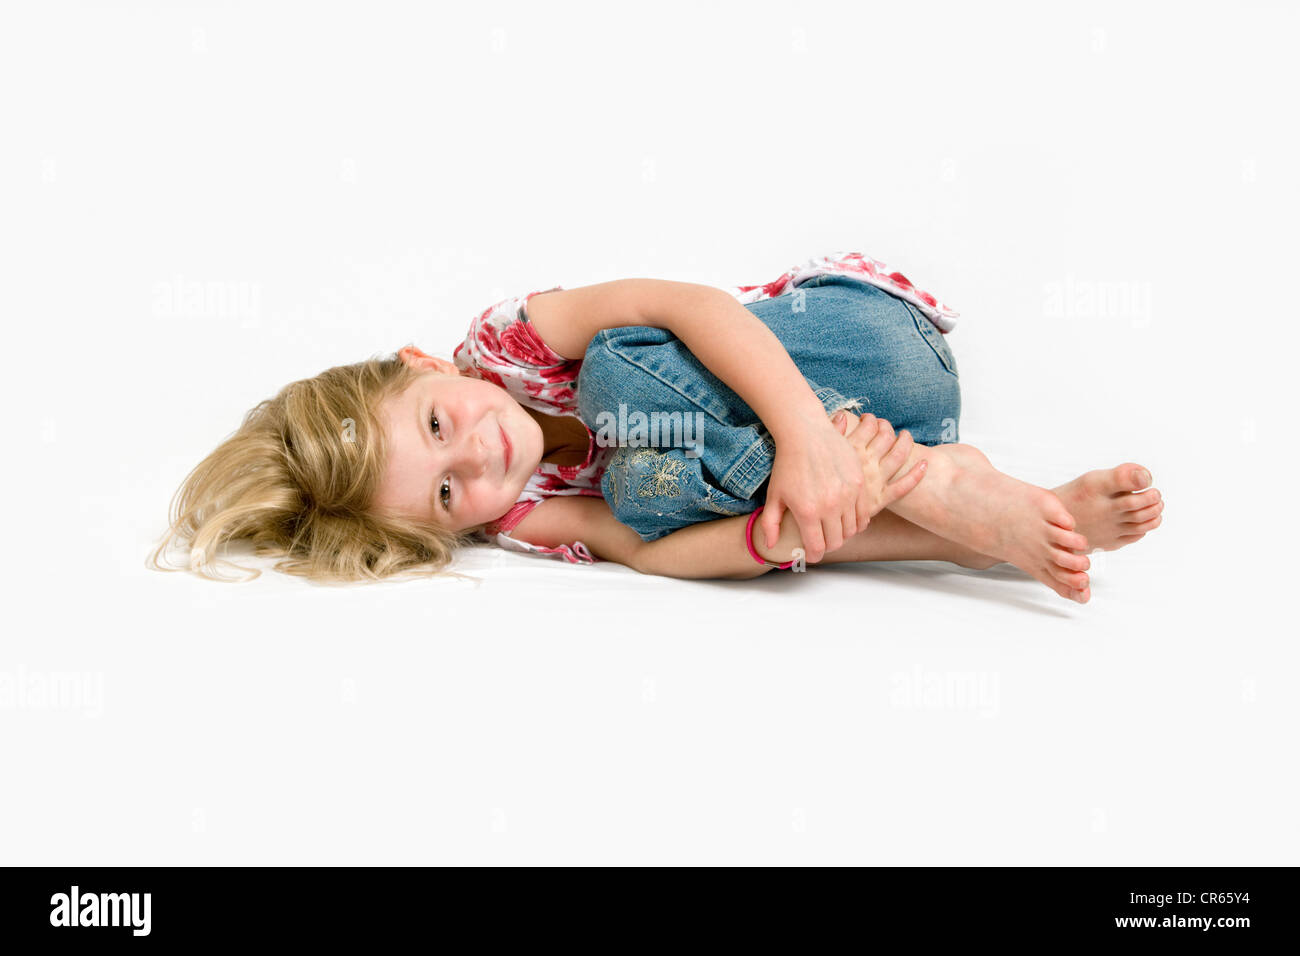 Studio Immagine di Caucasian 7 anno vecchio arricciato su uno sfondo bianco con una felice espressione sul viso Foto Stock